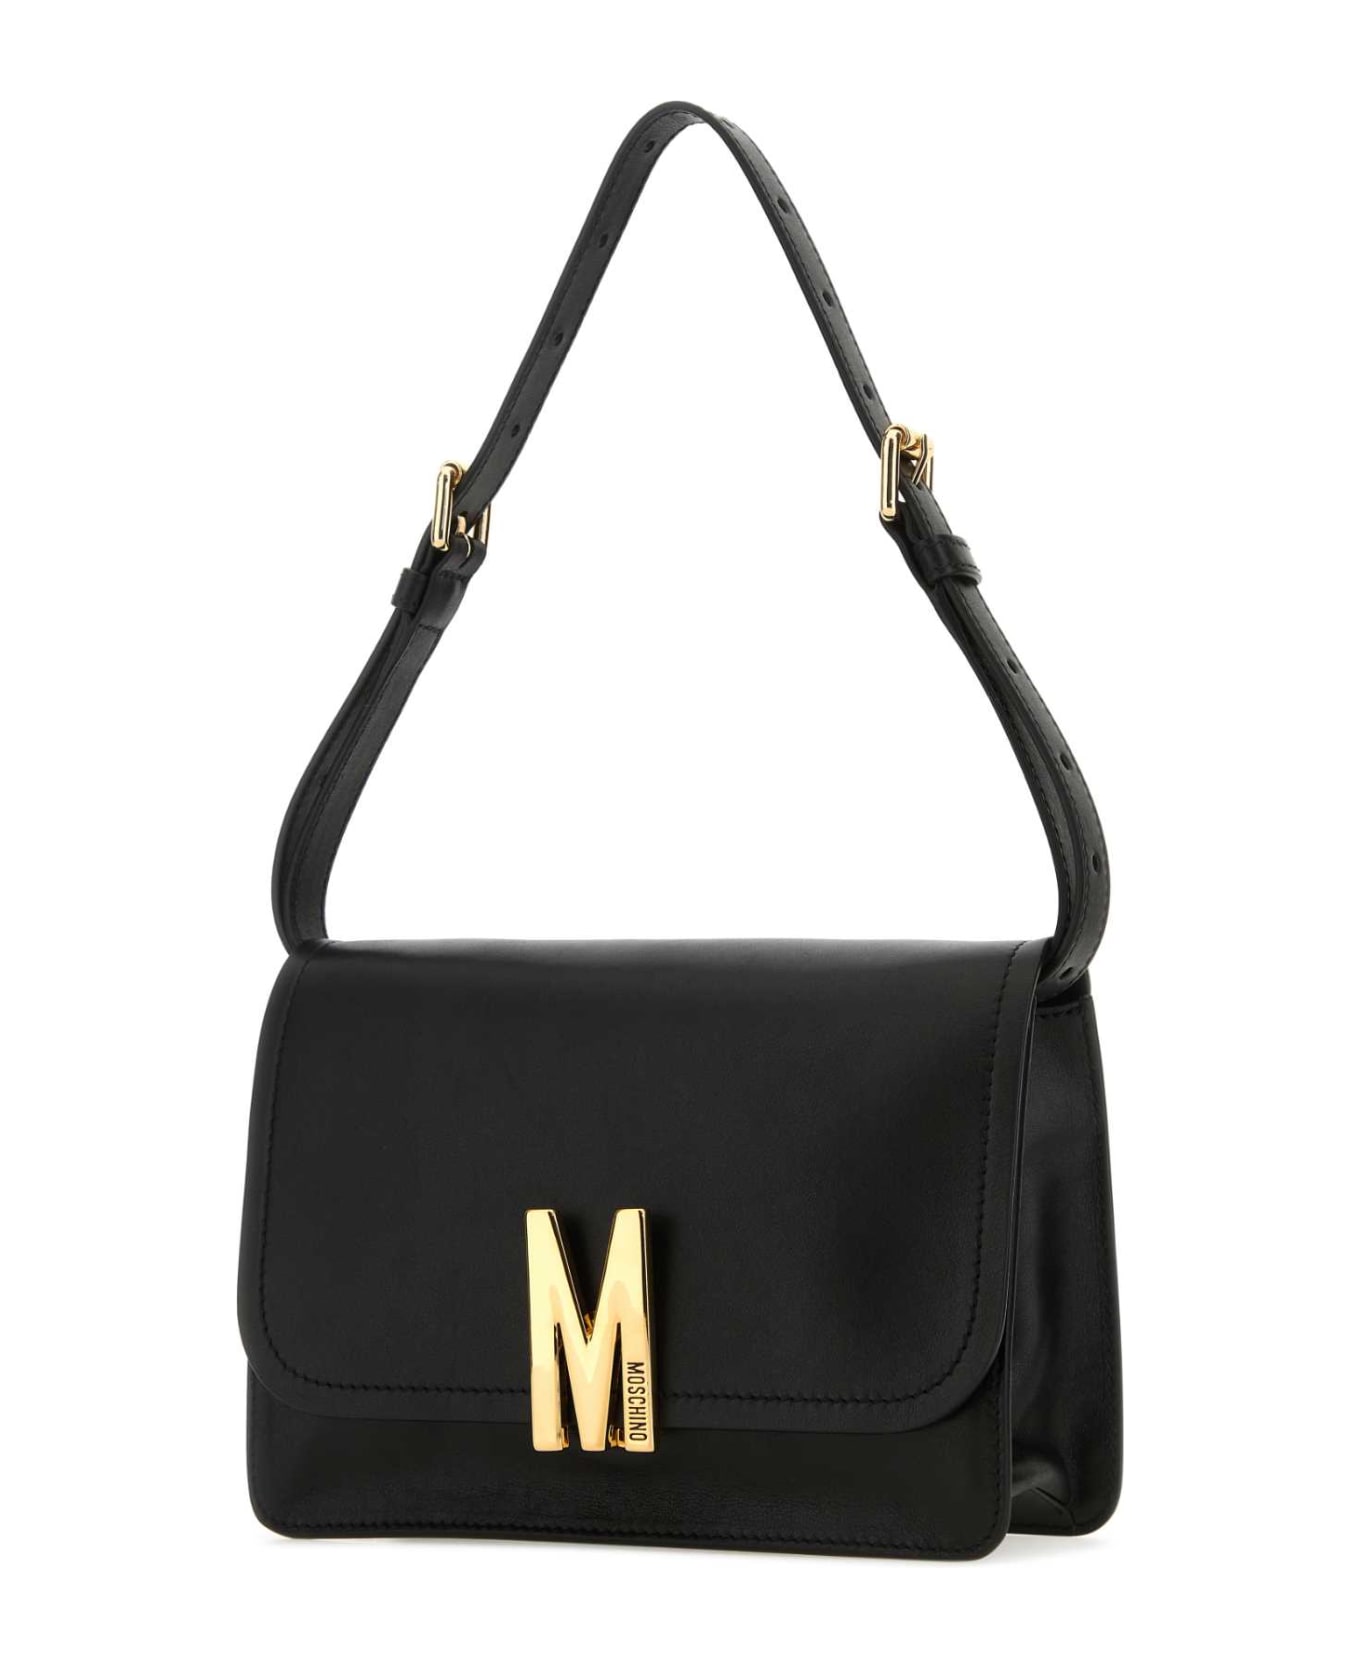 Moschino Black Leather M Bag Shoulder Bag - 0555